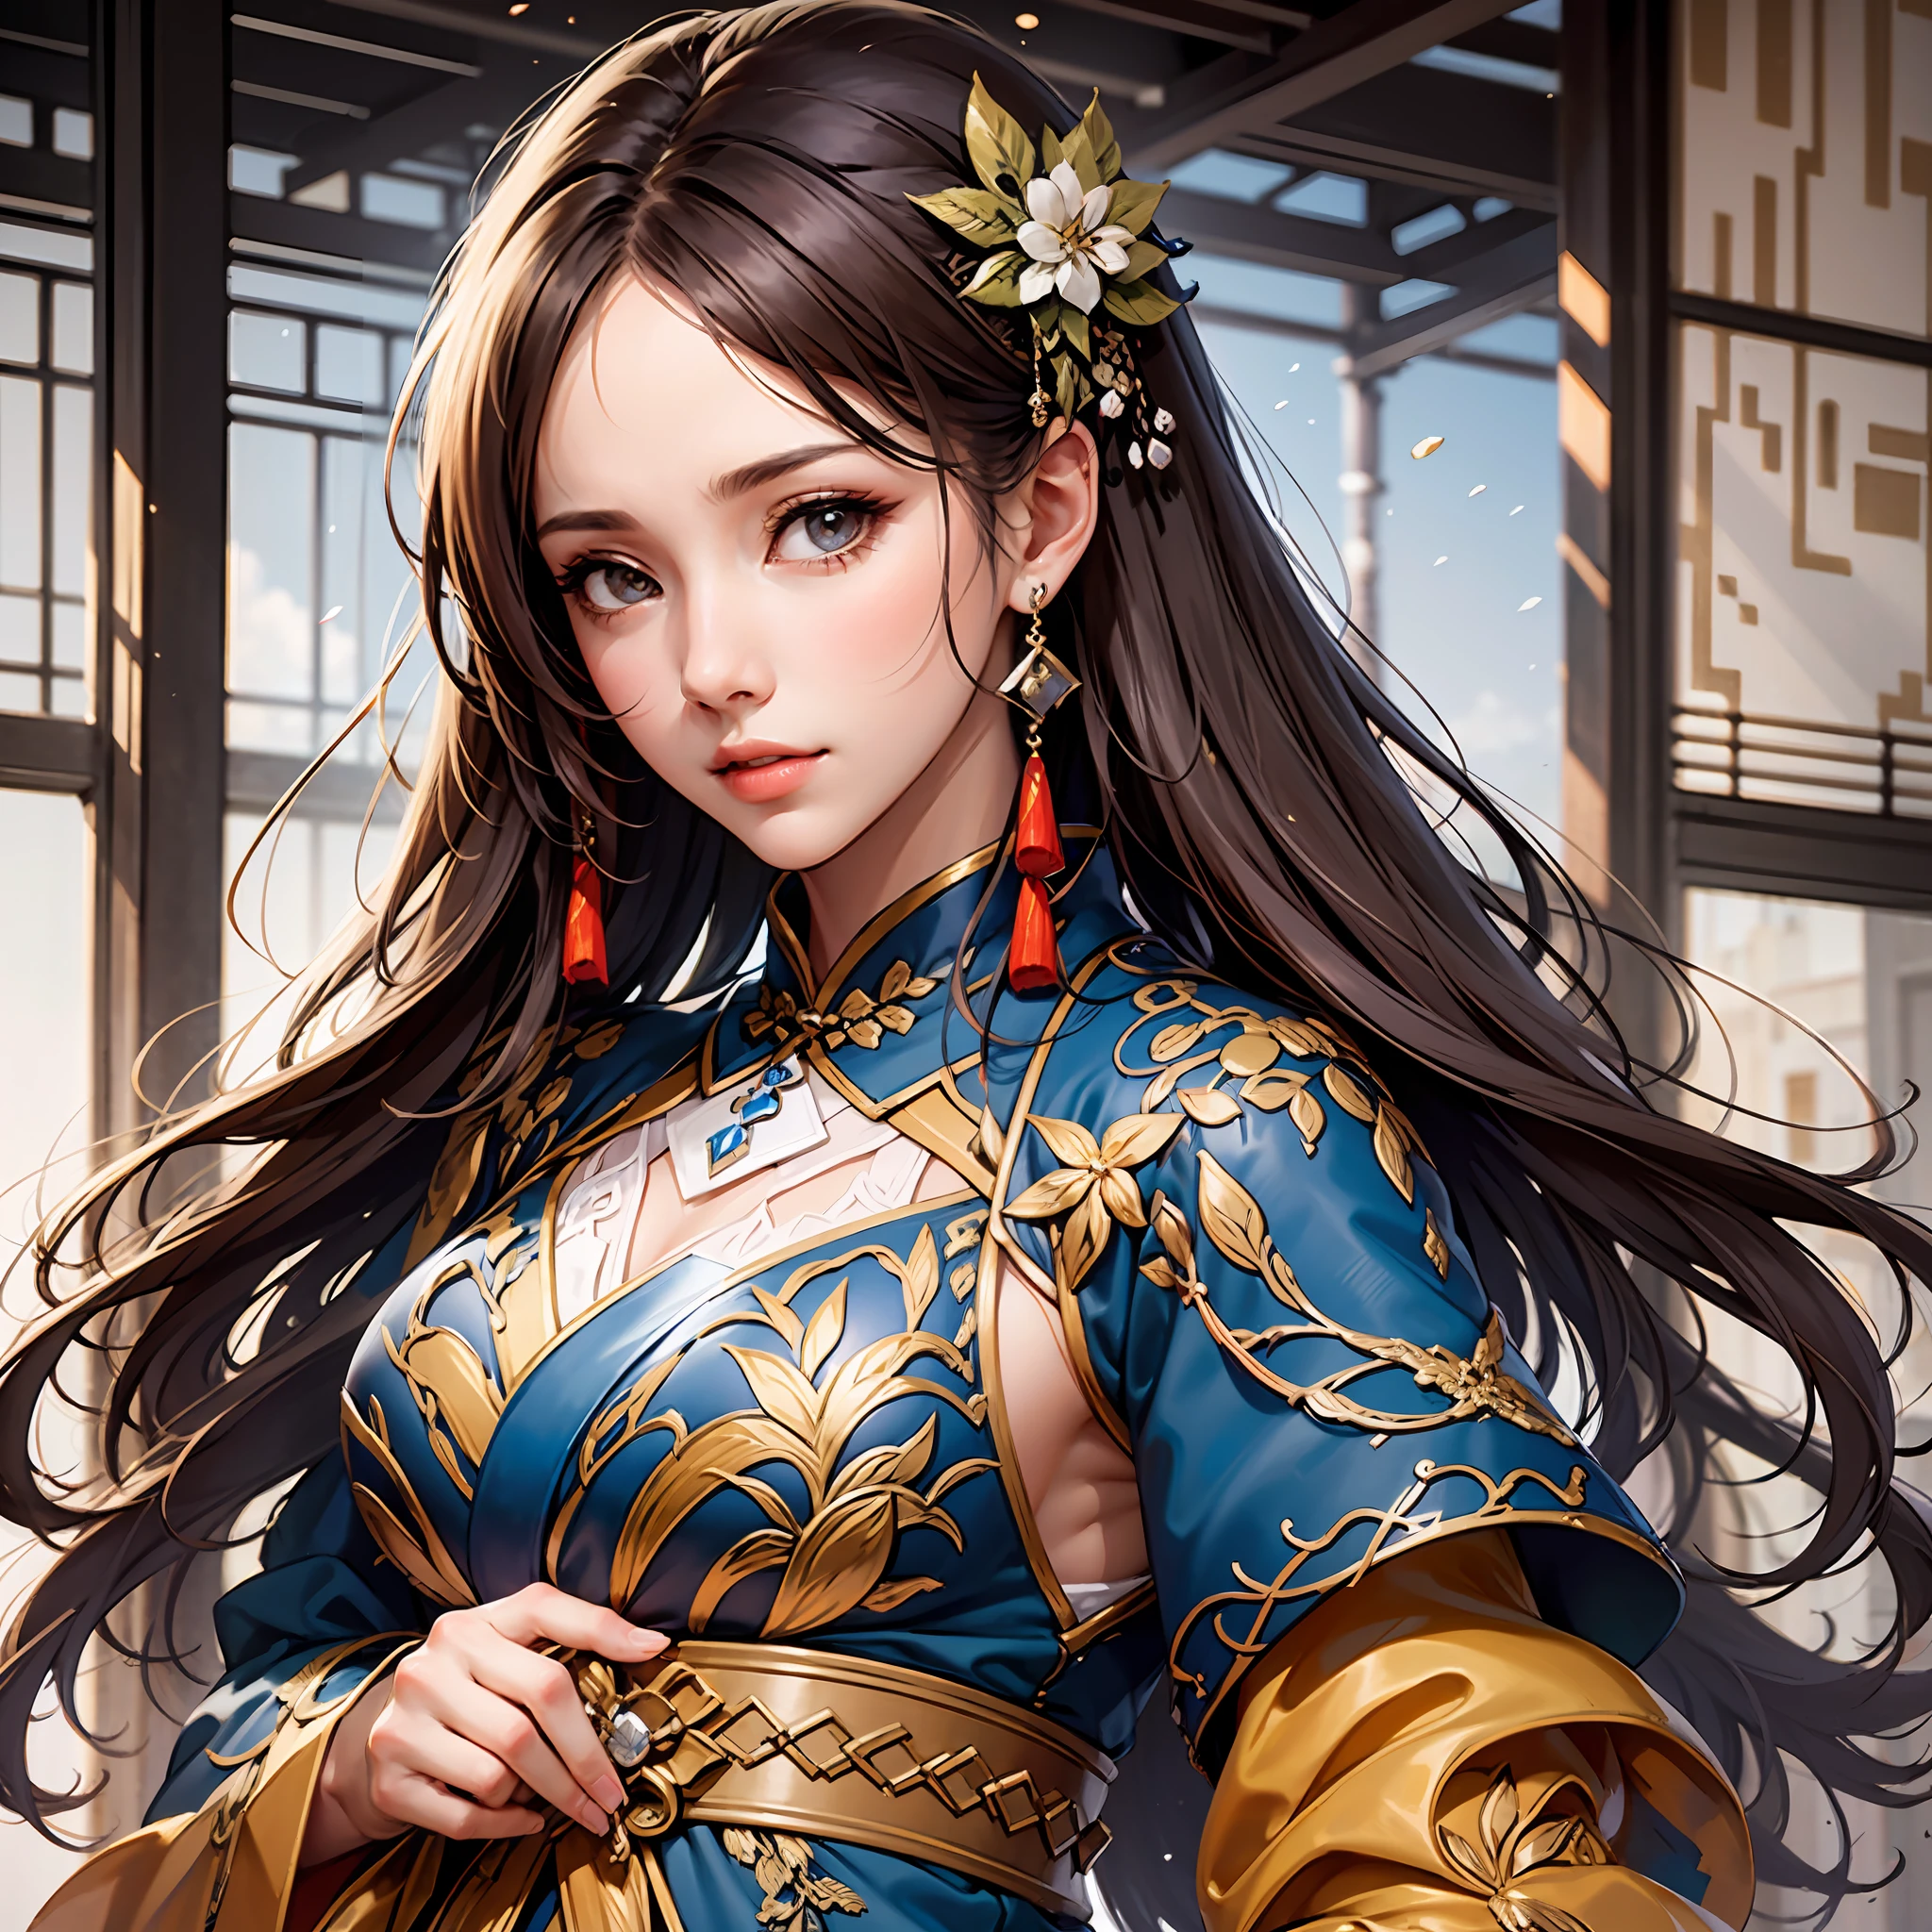 전국시대, 여성 장군, 매우 아름다운 얼굴, 높은 동적 각도, 8K, 매우 섬세함, 매우 조밀하다, 선명한 색상, 동적 벽지 일본 기모노와 중국 Hanfu MIX, 아름다운 검은 머리,